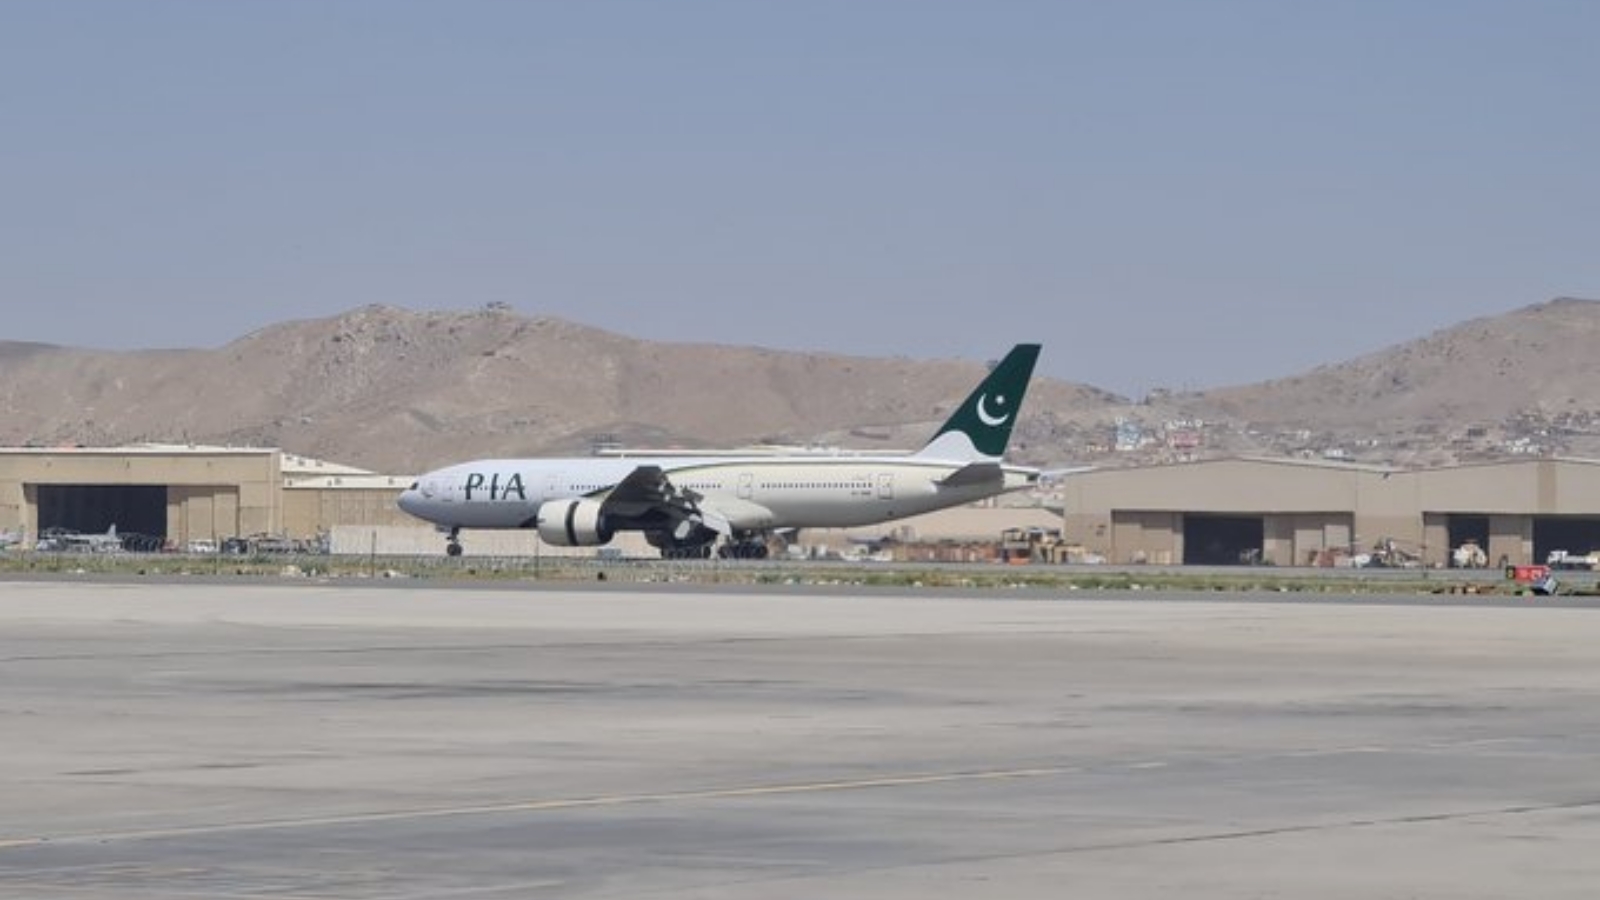 طائرة باكستانية في مطار كابول في أول رحلة تجارية أجنبية منذ سيطرة حركة طالبان المتشدّدة. بتاريخ 13 أيلول/ سبتمبر 2021. (عن صفحة Mohamad Ali Harissi @aleeharissi الرسمية في تويتر)